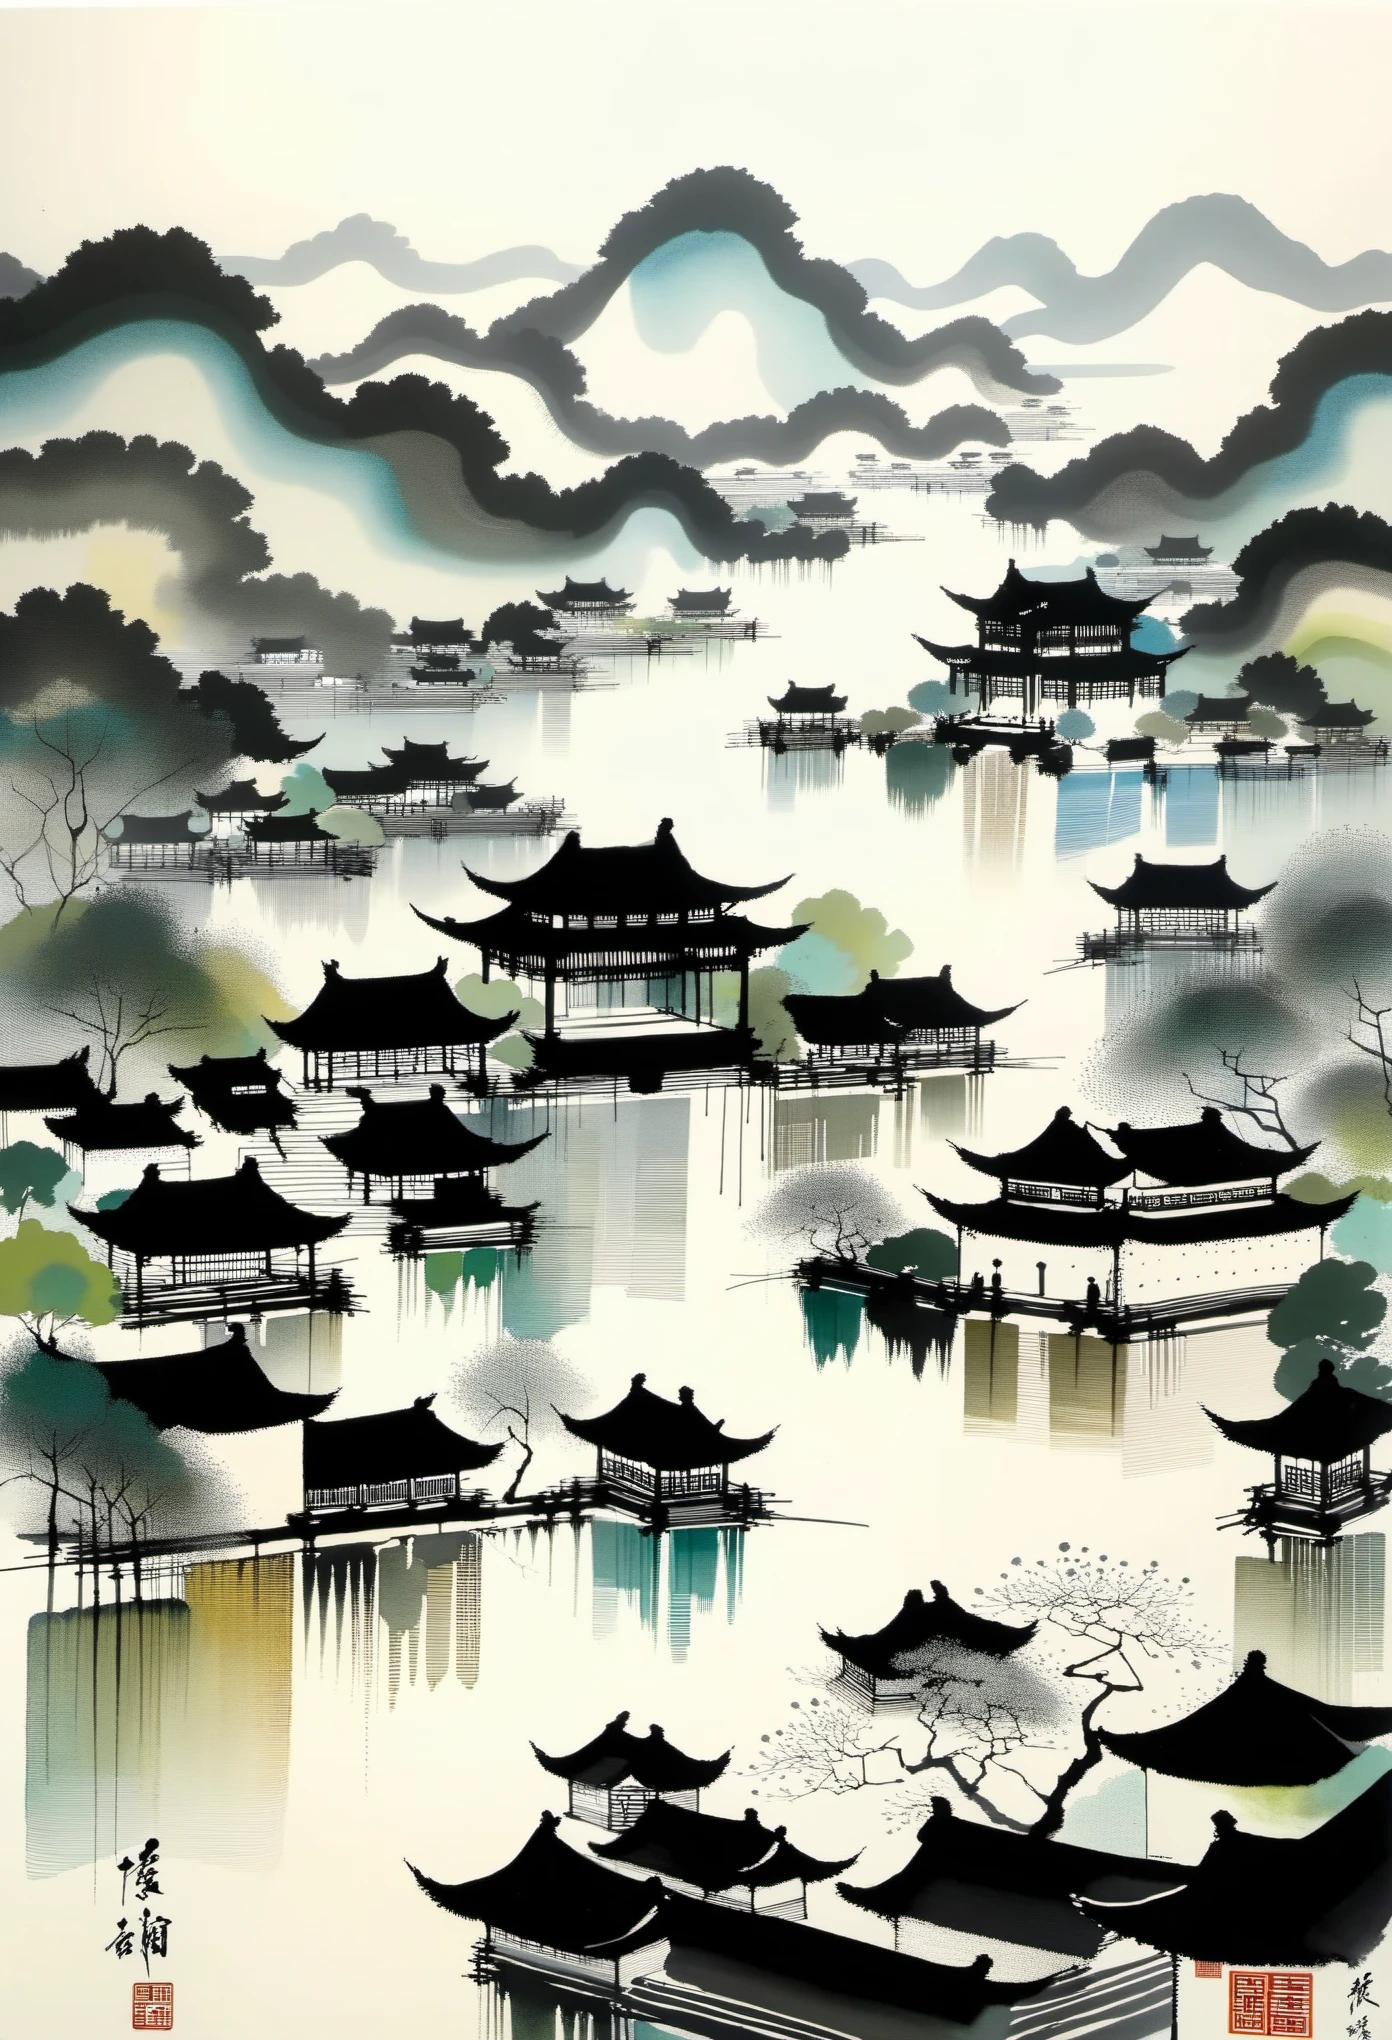 幾何学的抽象インク，江南景観建築群について説明する，呉貫中のスタイルは、伝統的な中国の水墨技法と西洋の絵画の概念を融合した芸術表現である。. 伝統的なテーマを現代的に解釈したのが特徴です, 色と線でユニークな視覚効果を生み出す.